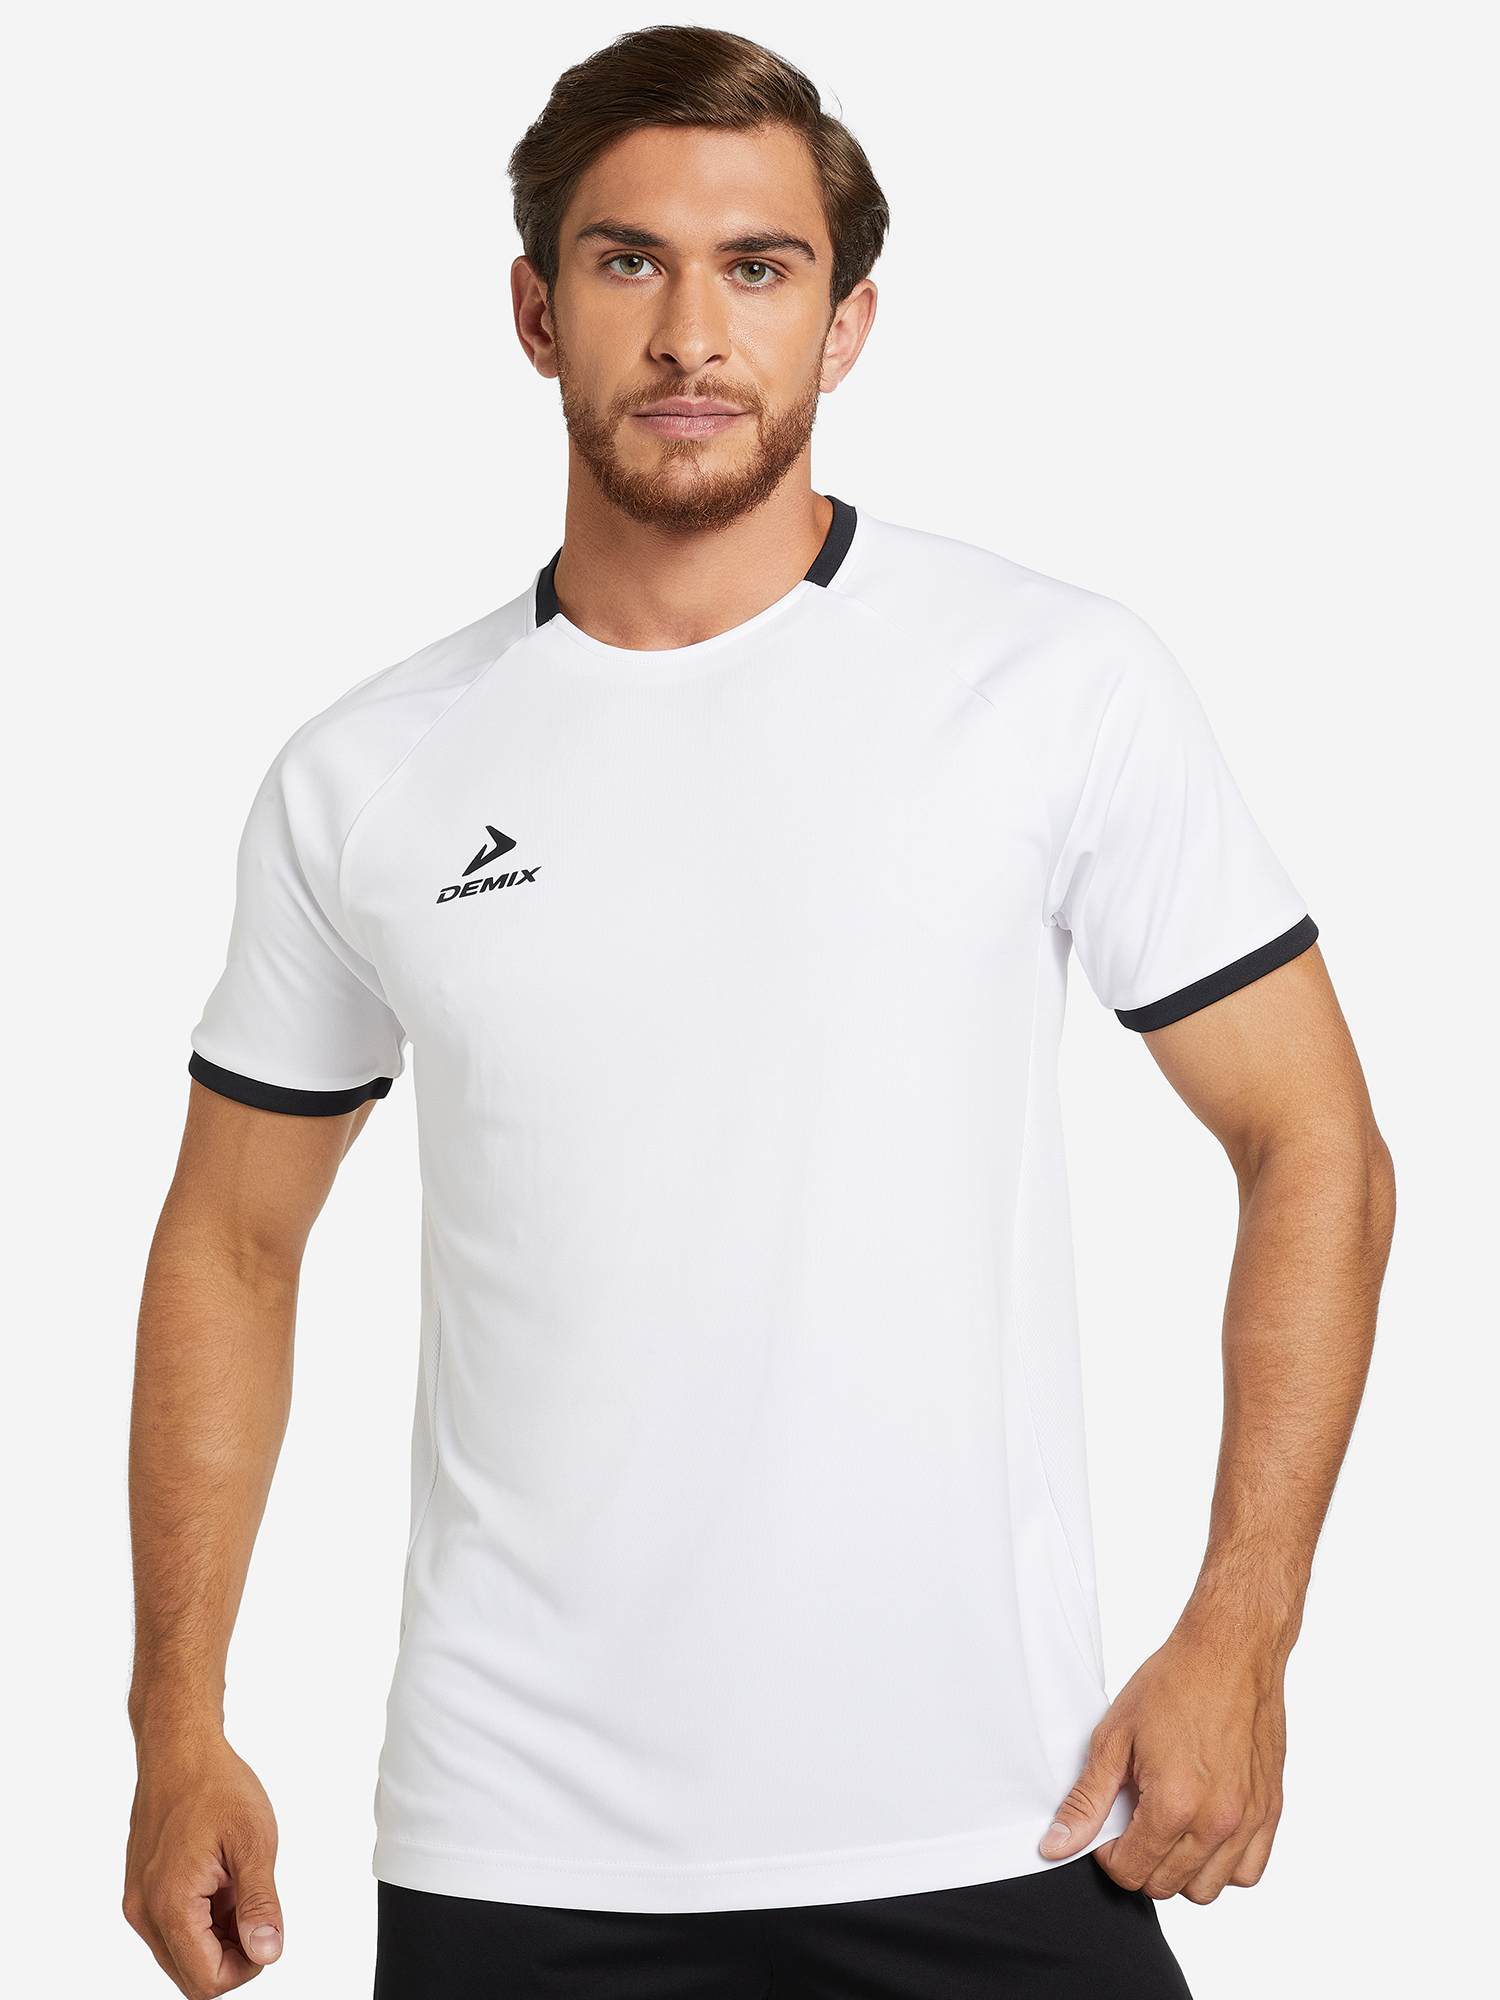 Футболка мужская Demix Division, Белый футболка мужская оверсайз demix белый